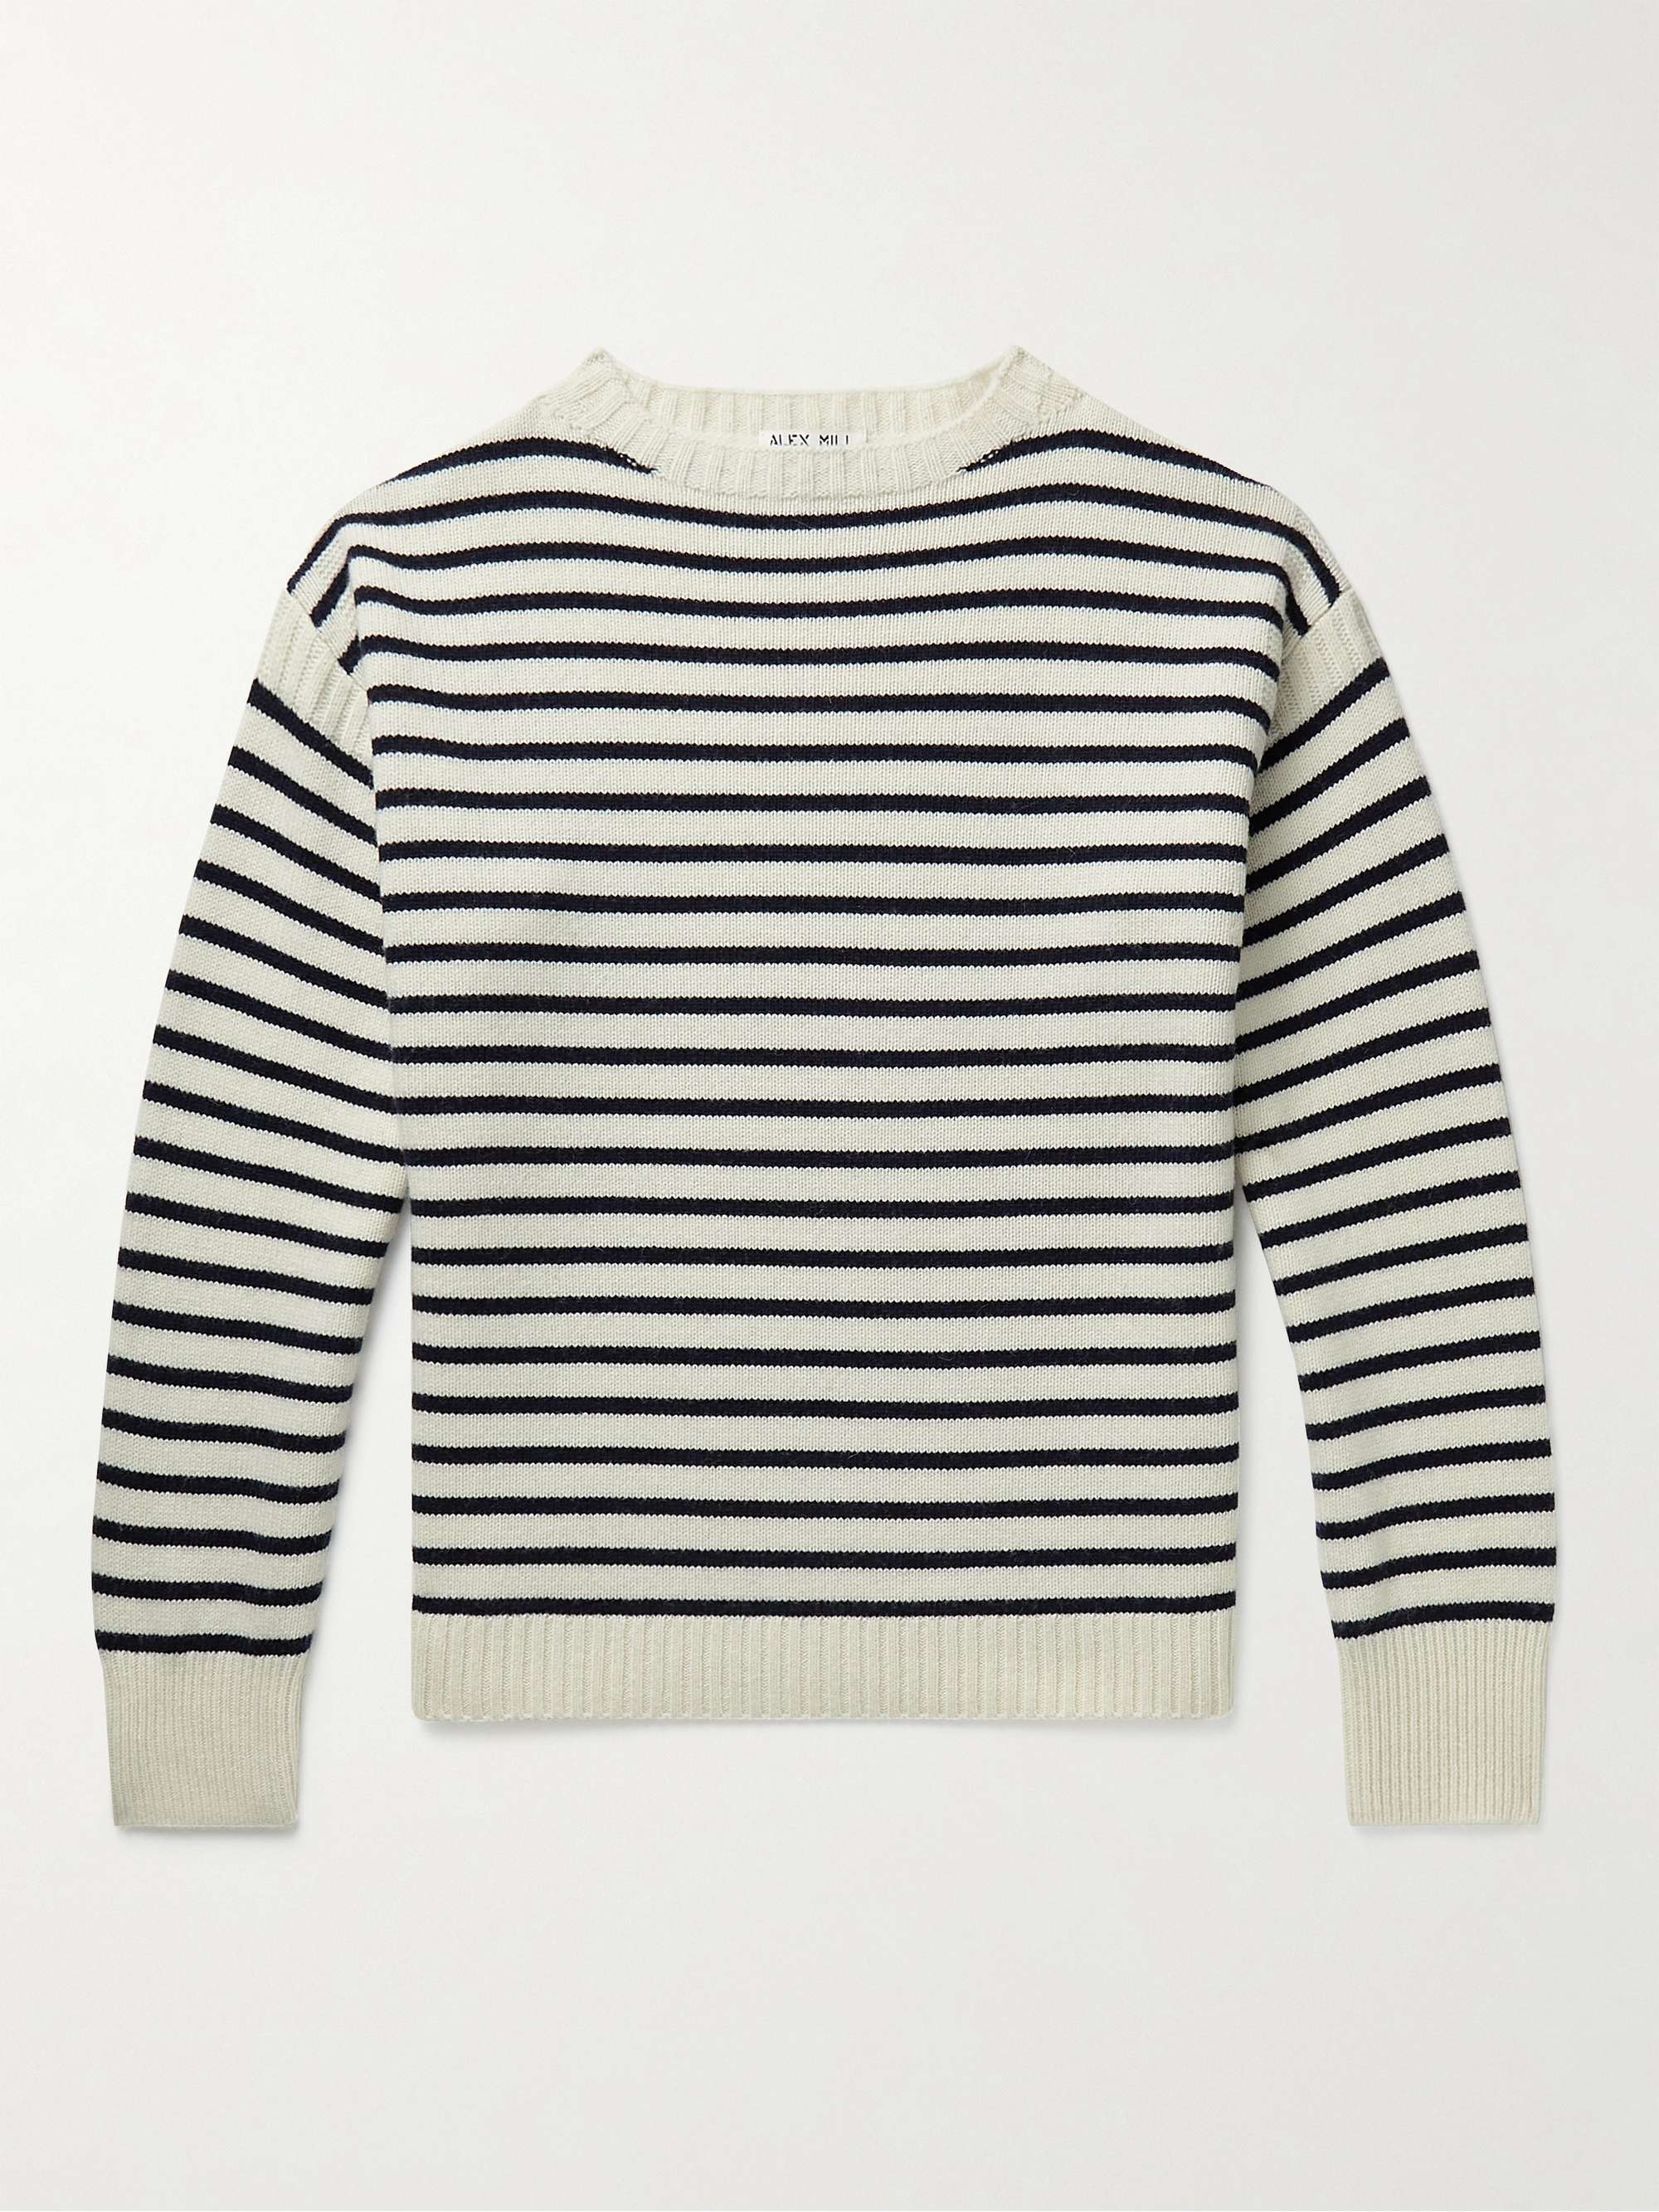 ALEX MILL Harbor Striped Merino Wool Sweater